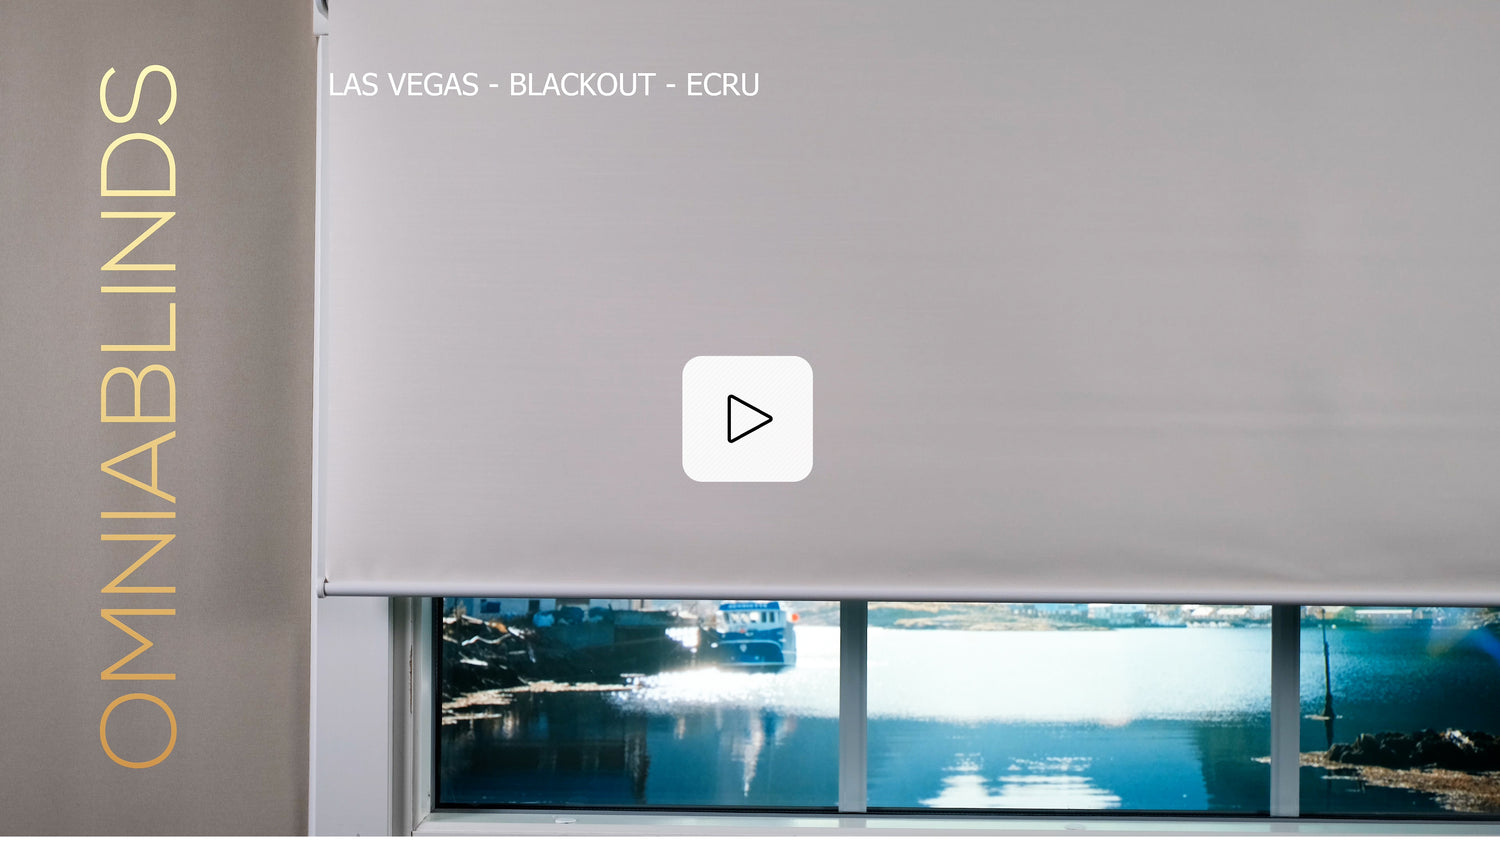 Las Vegas - Blackout - Ecru